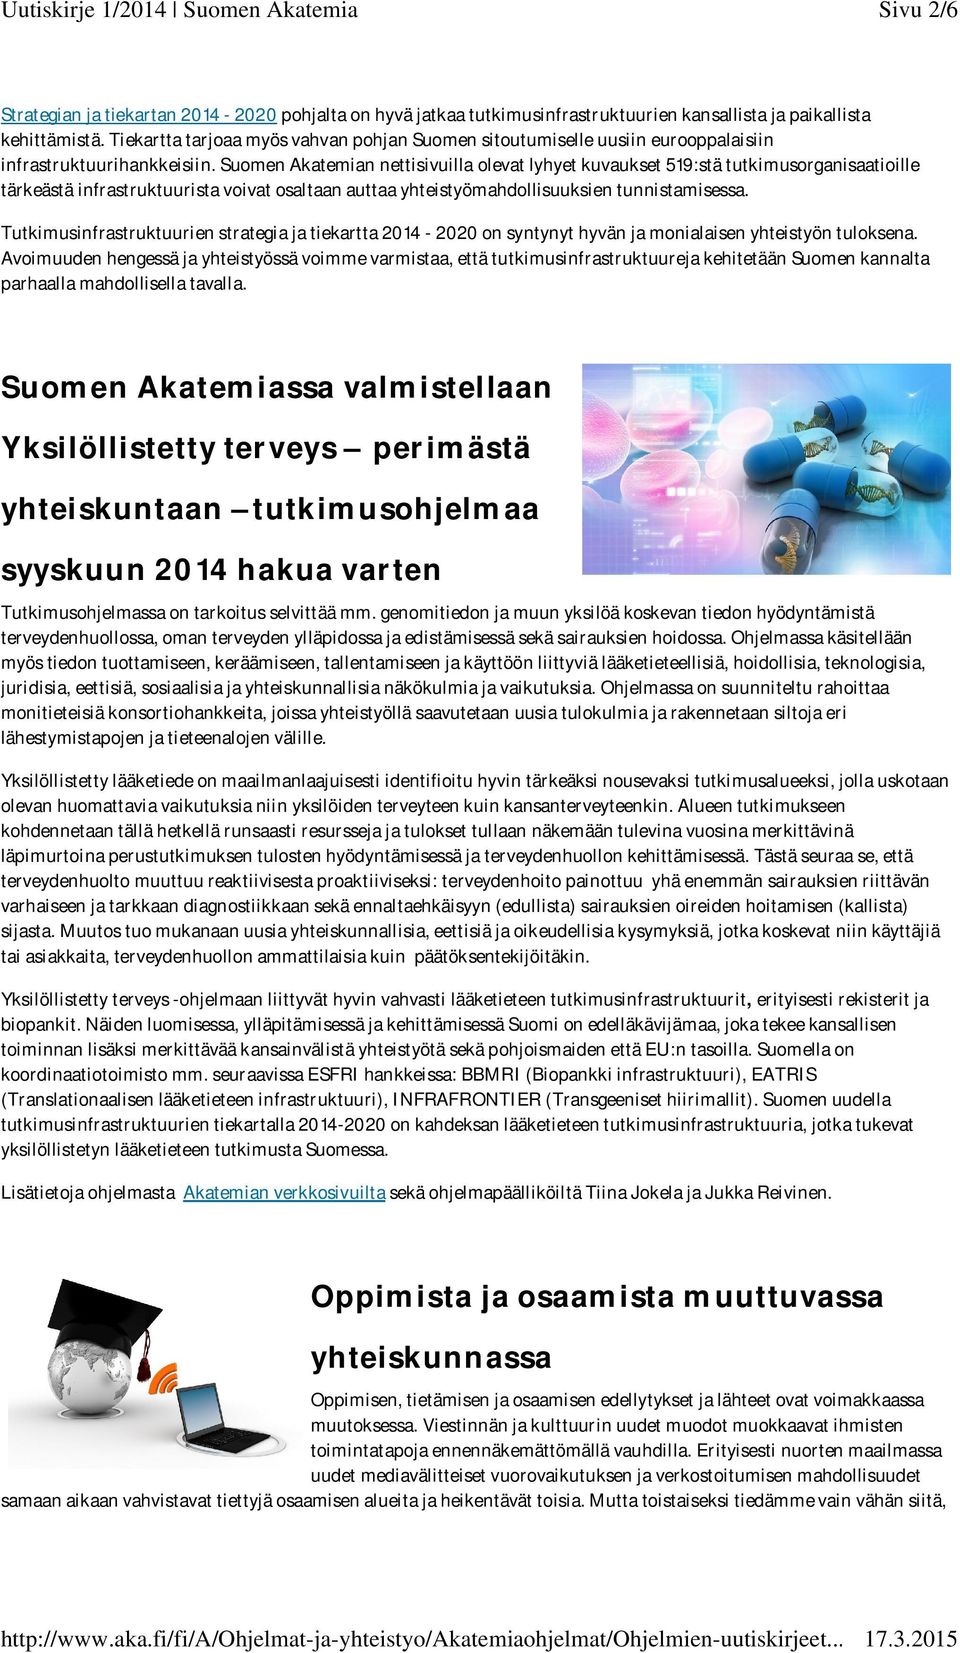 Suomen Akatemian nettisivuilla olevat lyhyet kuvaukset 519:stä tutkimusorganisaatioille tärkeästä infrastruktuurista voivat osaltaan auttaa yhteistyömahdollisuuksien tunnistamisessa.